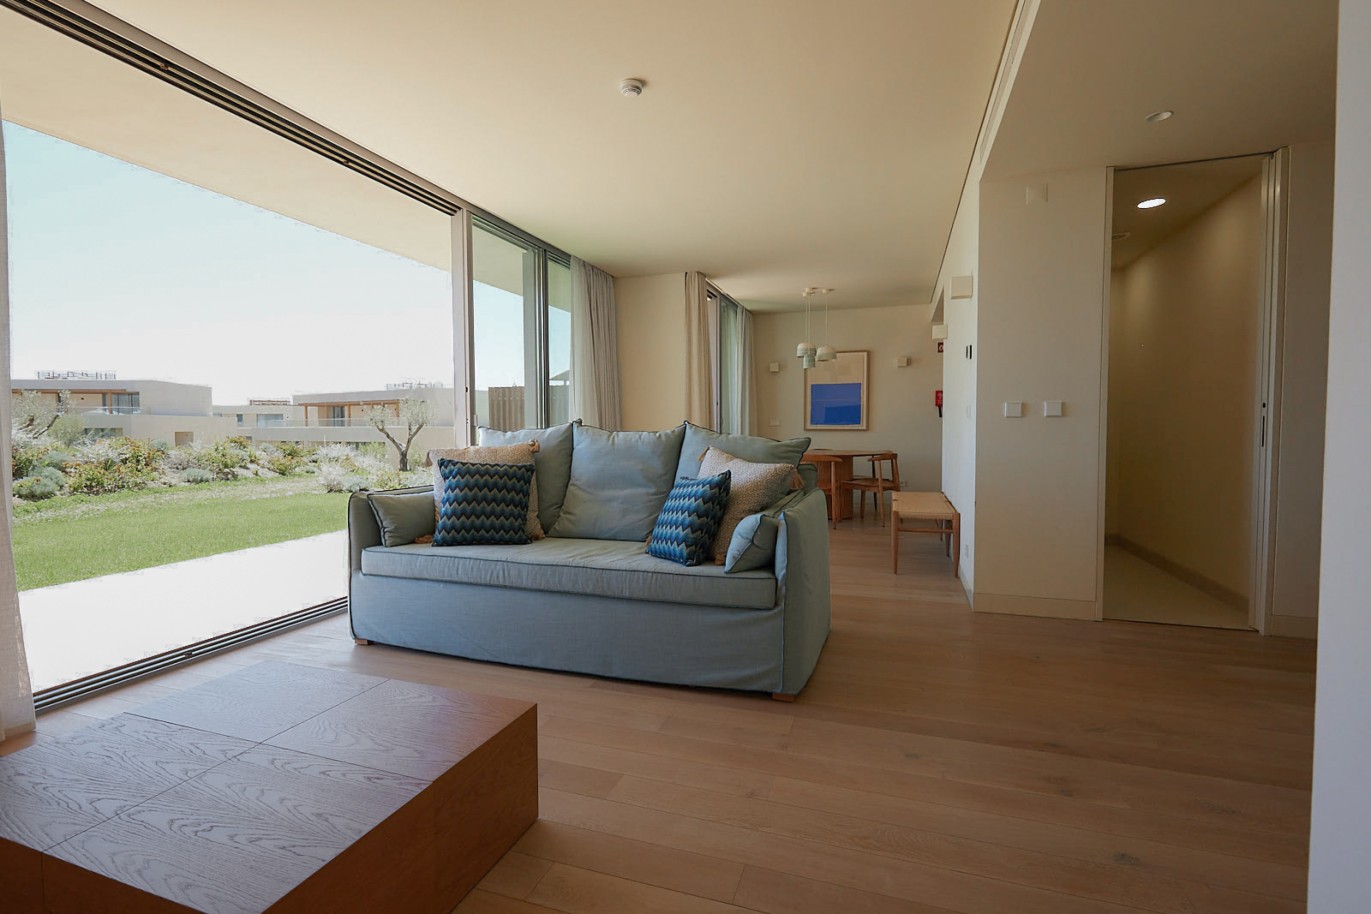 Piso de 2 dormitorios en complejo, en venta en Porches, Algarve_229093